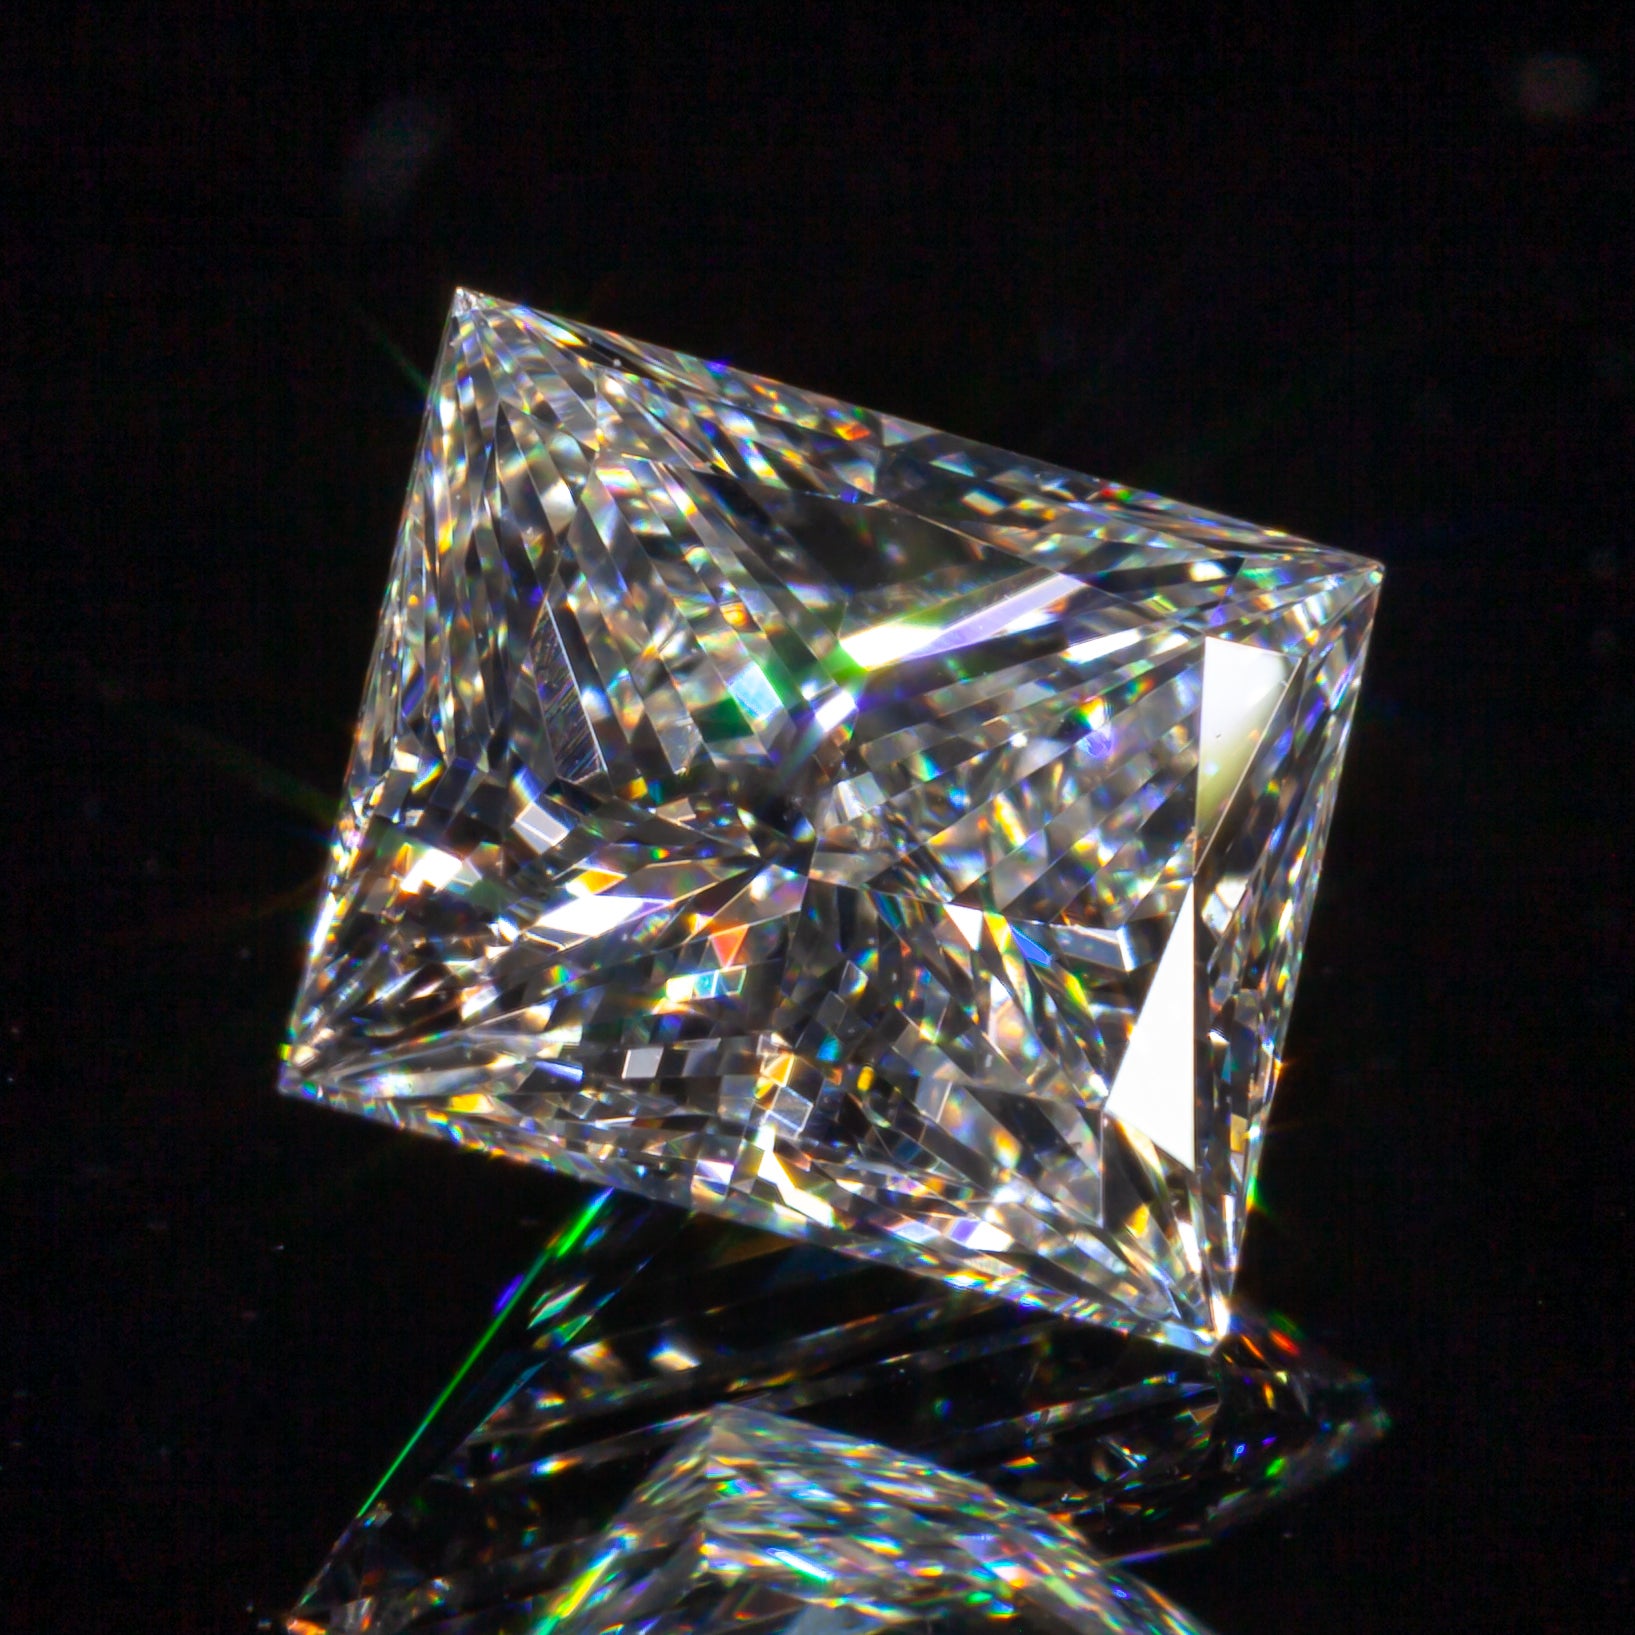 Diamant princesse rectangulaire modifié brillant 1,05 carat non serti H/VS2, certifié GIA

Informations générales sur le diamant
Numéro de rapport GIA : 2185448167
Taille du diamant : Rectangulaire Modifié Brillant
Dimensions : 6,03 x 5,52 x 3,71